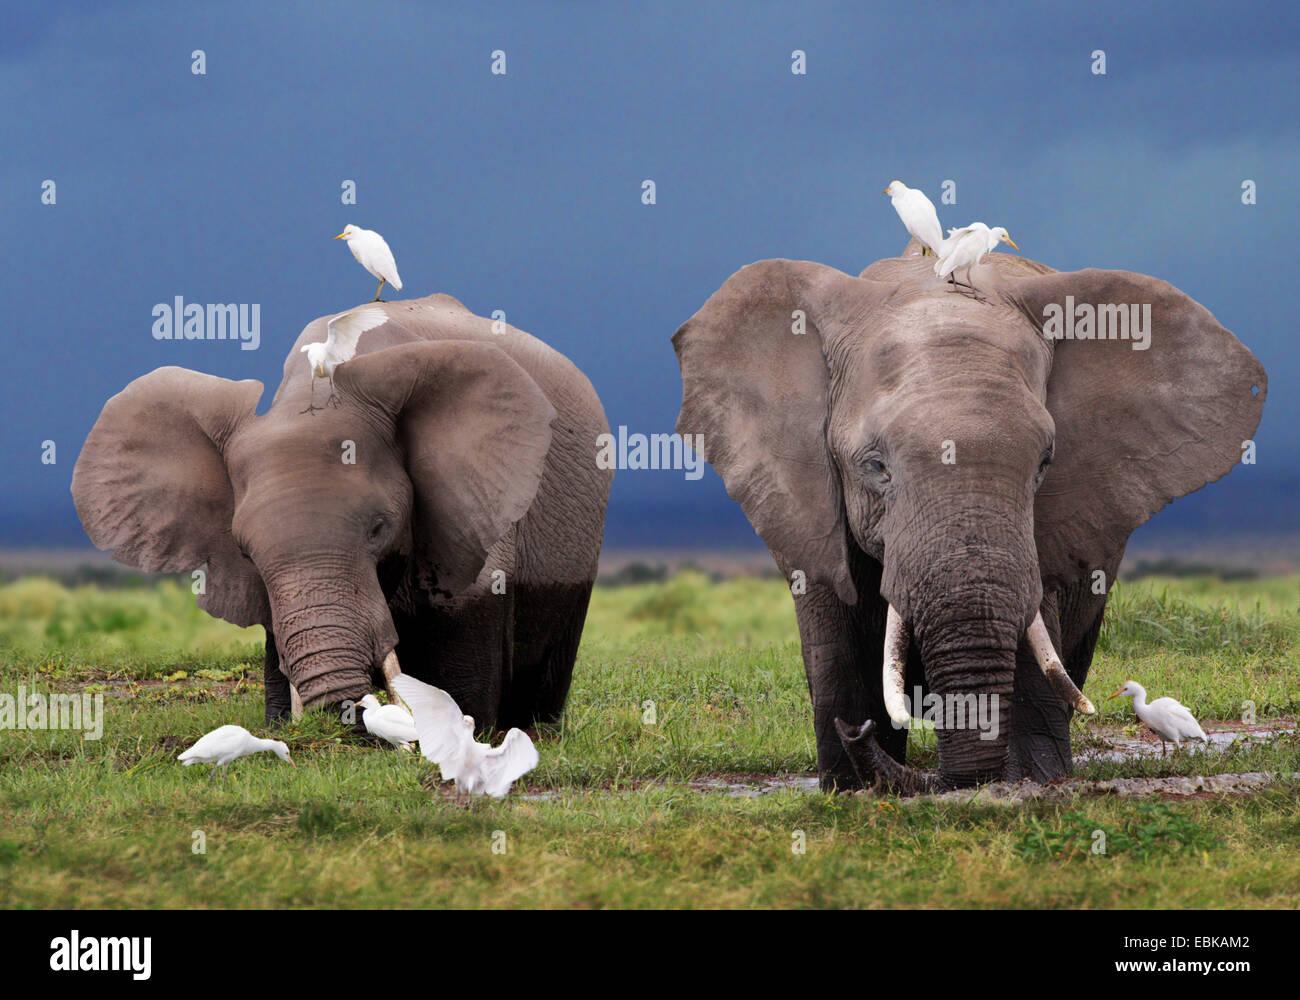 L'éléphant africain (Loxodonta africana), deux éléphants à l'alimentation dans des marais, Parc National d'Amboseli, Kenya Banque D'Images